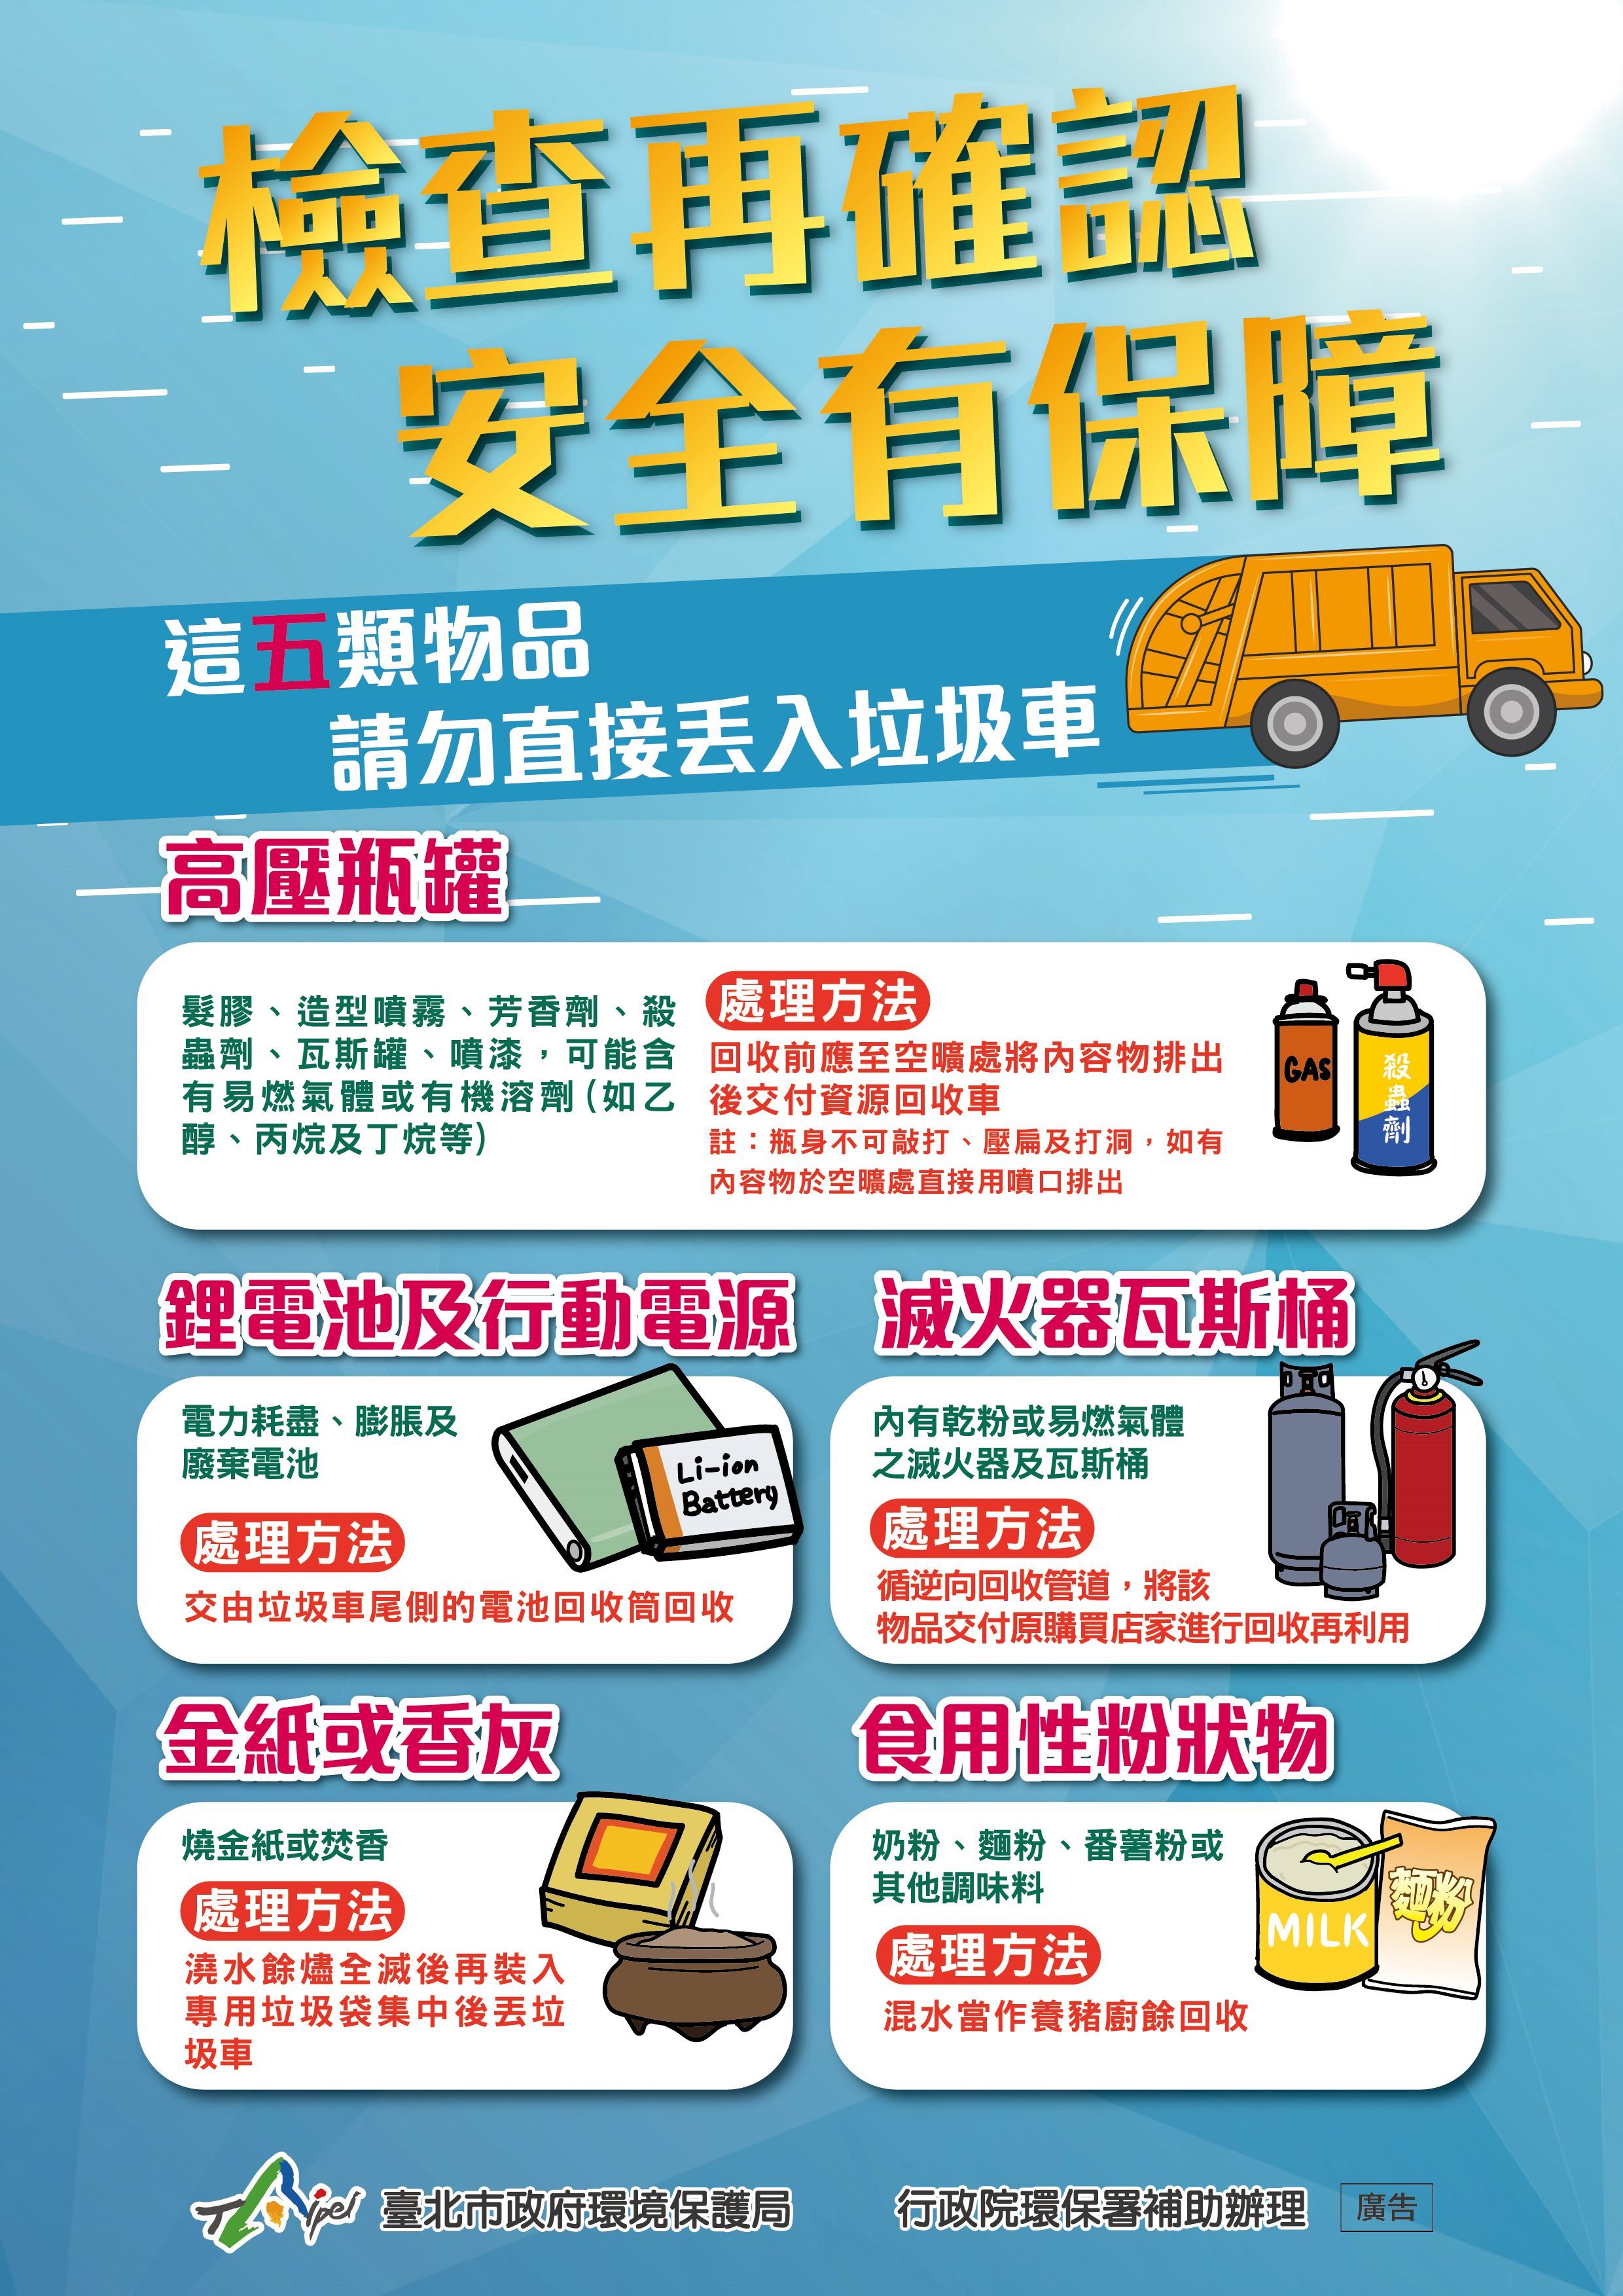 Cục Bảo vệ Môi trường của chính quyền thành phố Đài Bắc nhắc nhở người dân cần phân loại rác thải. (Nguồn ảnh: Cục Bảo vệ Môi trường của chính quyền thành phố Đài Bắc)